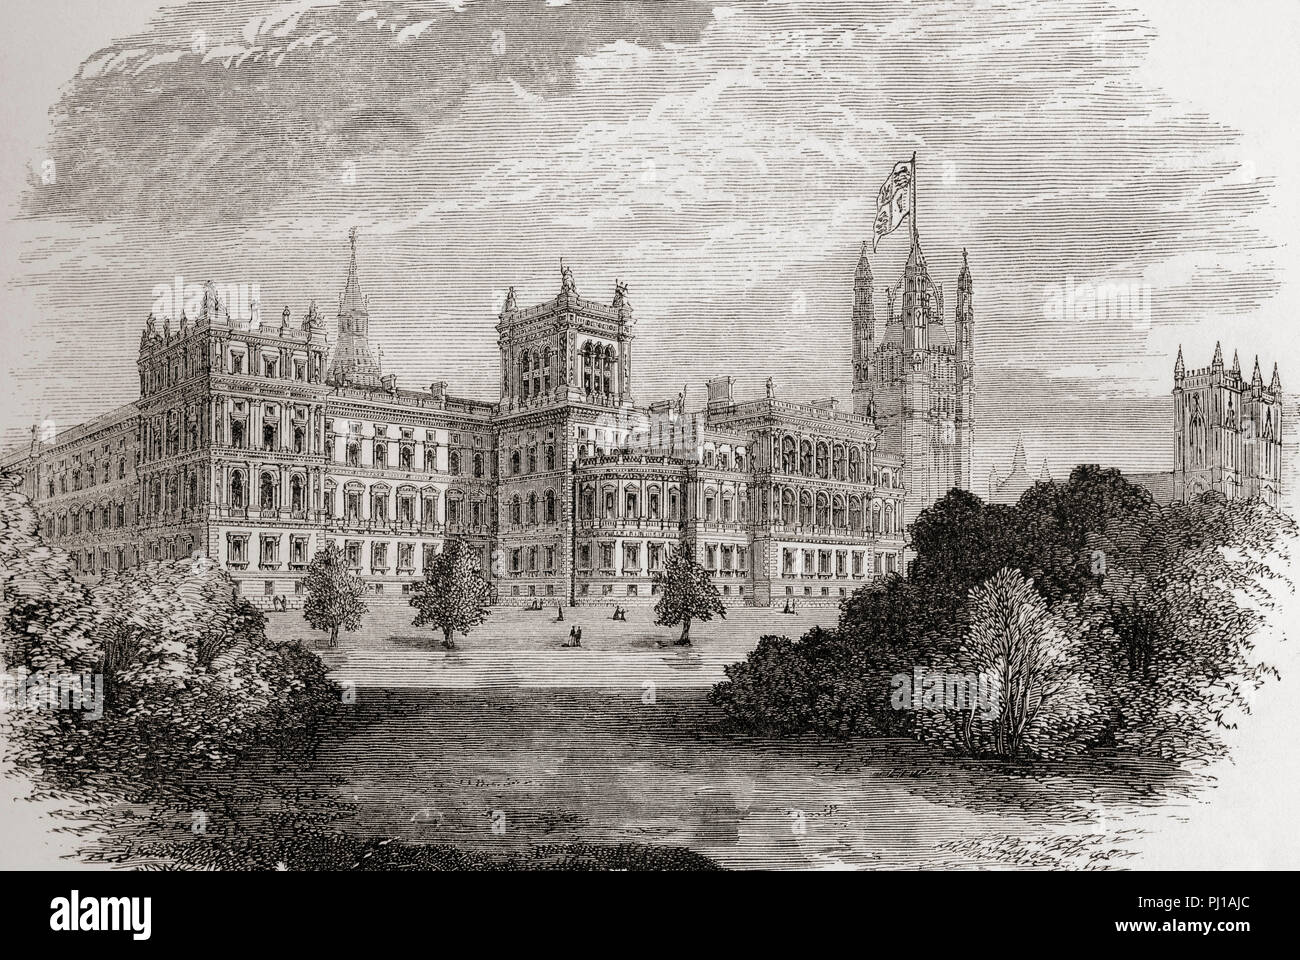 Das Auswärtige Amt von St. James's Park, London, England im 19. Jahrhundert. Von London Bilder, veröffentlicht 1890. Stockfoto